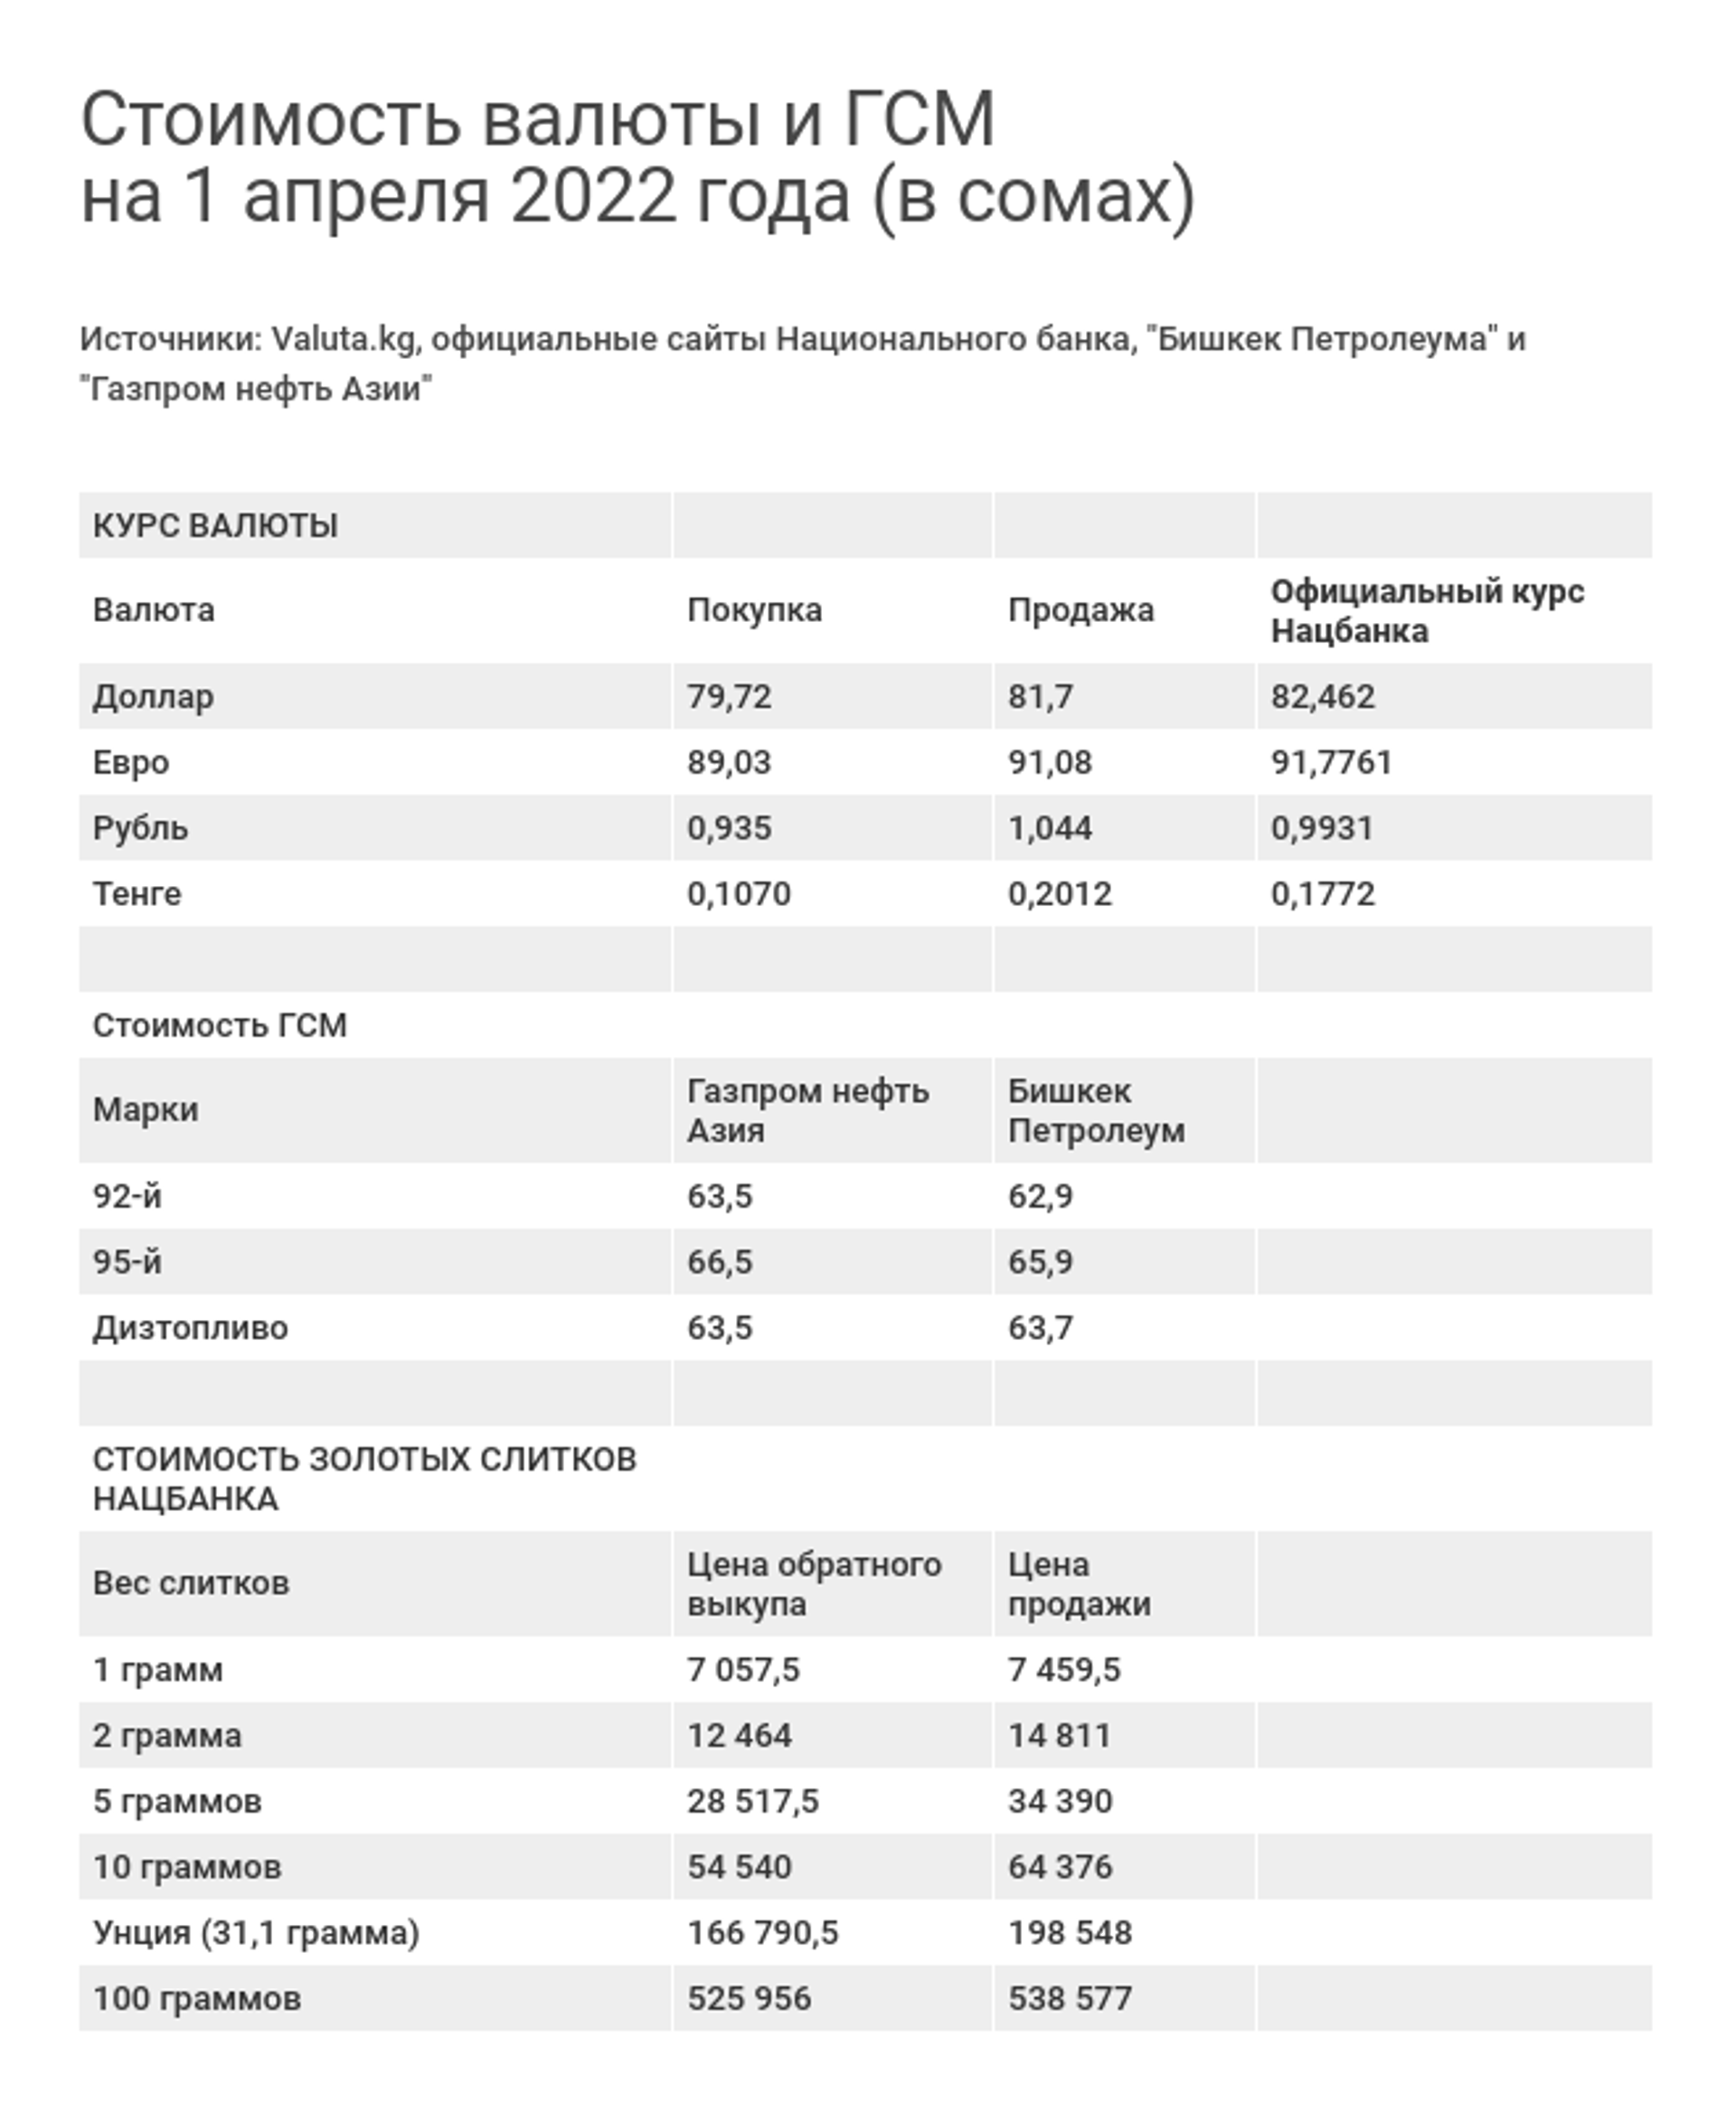 Стоимость валюты и ГСМ  на 1 апреля 2022 года (в сомах) - Sputnik Кыргызстан, 1920, 01.04.2022